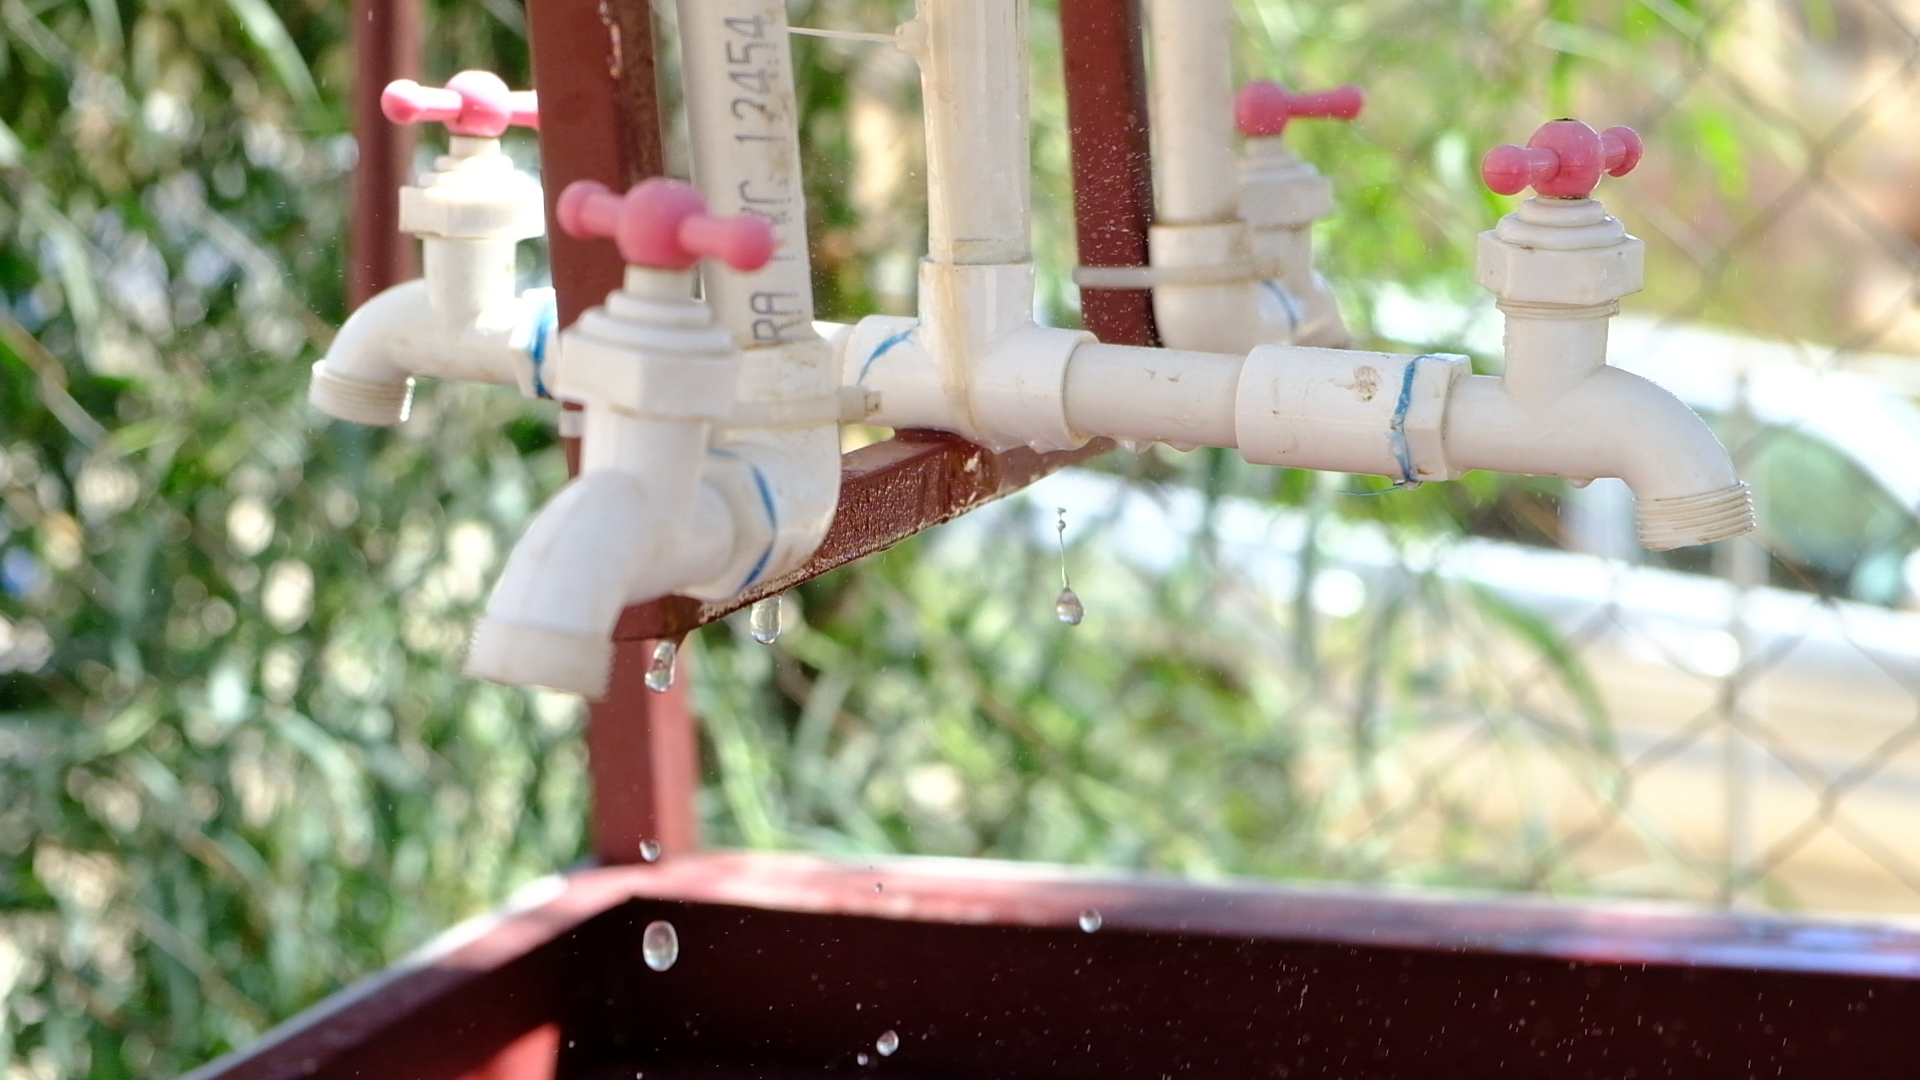 La fuga de agua es notoria en algunos modelos, como fue detectado en la escuela “Misiones de Baja California”. Crédito: Isaac Rosas León. 